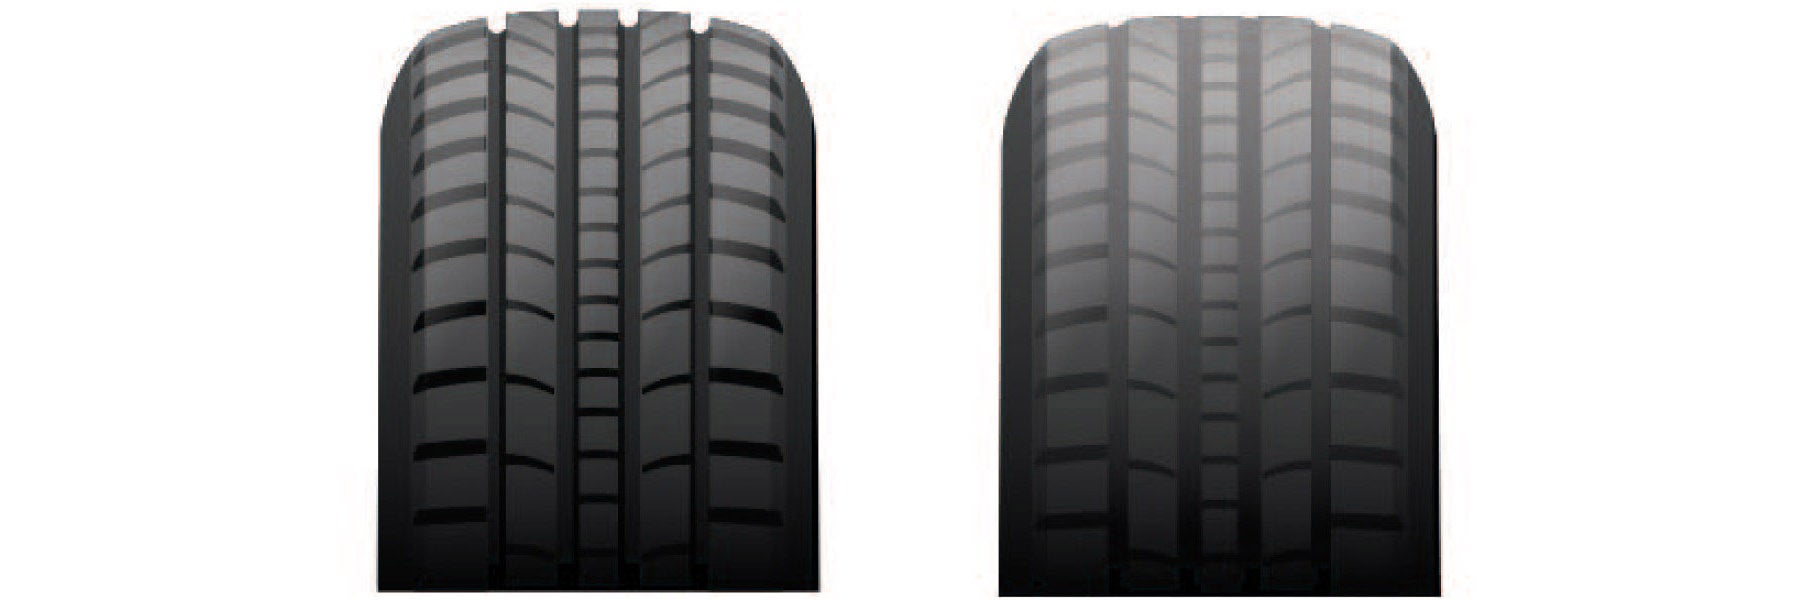 Tire tread depth comparison at Classic Kia in Waukegan IL